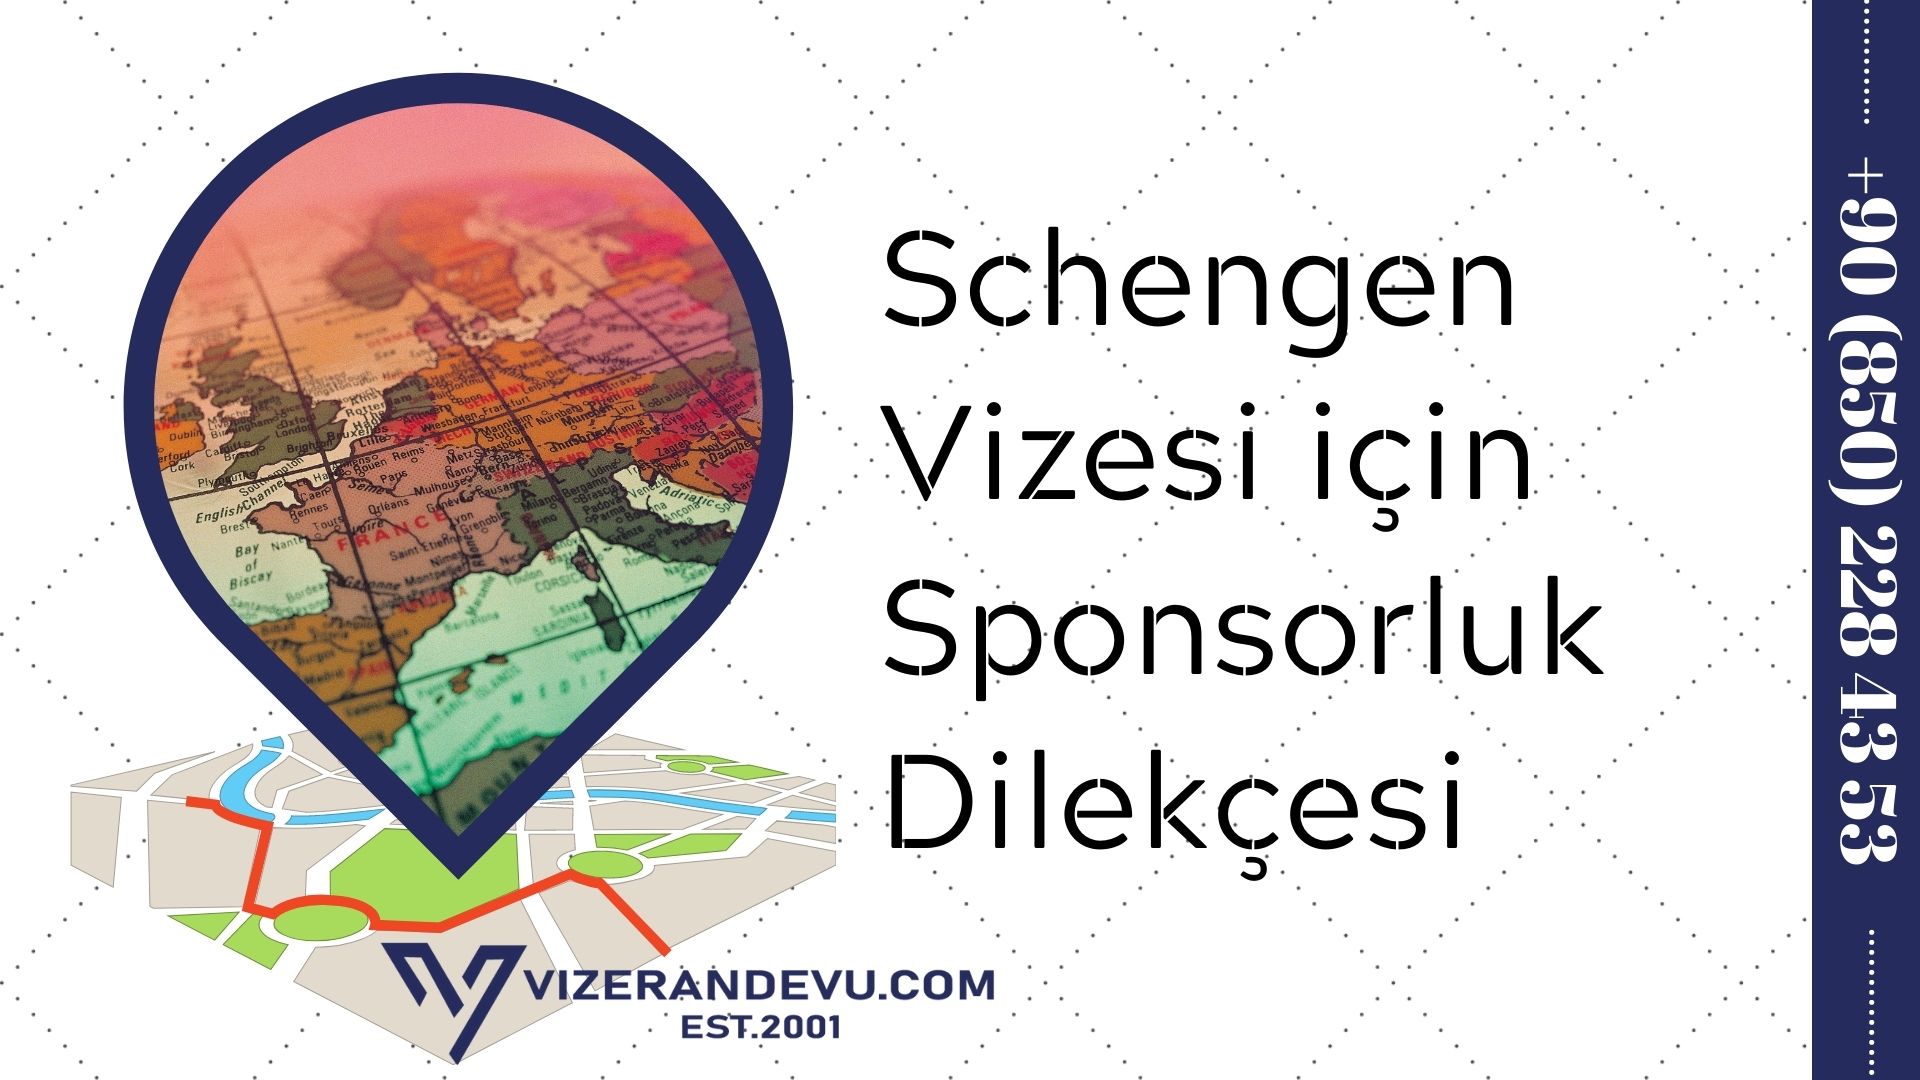 Schengen Vizesi için Sponsorluk Dilekçesi - Ücretsiz 1 – schengen vizesi icin sponsorluk dilekcesi